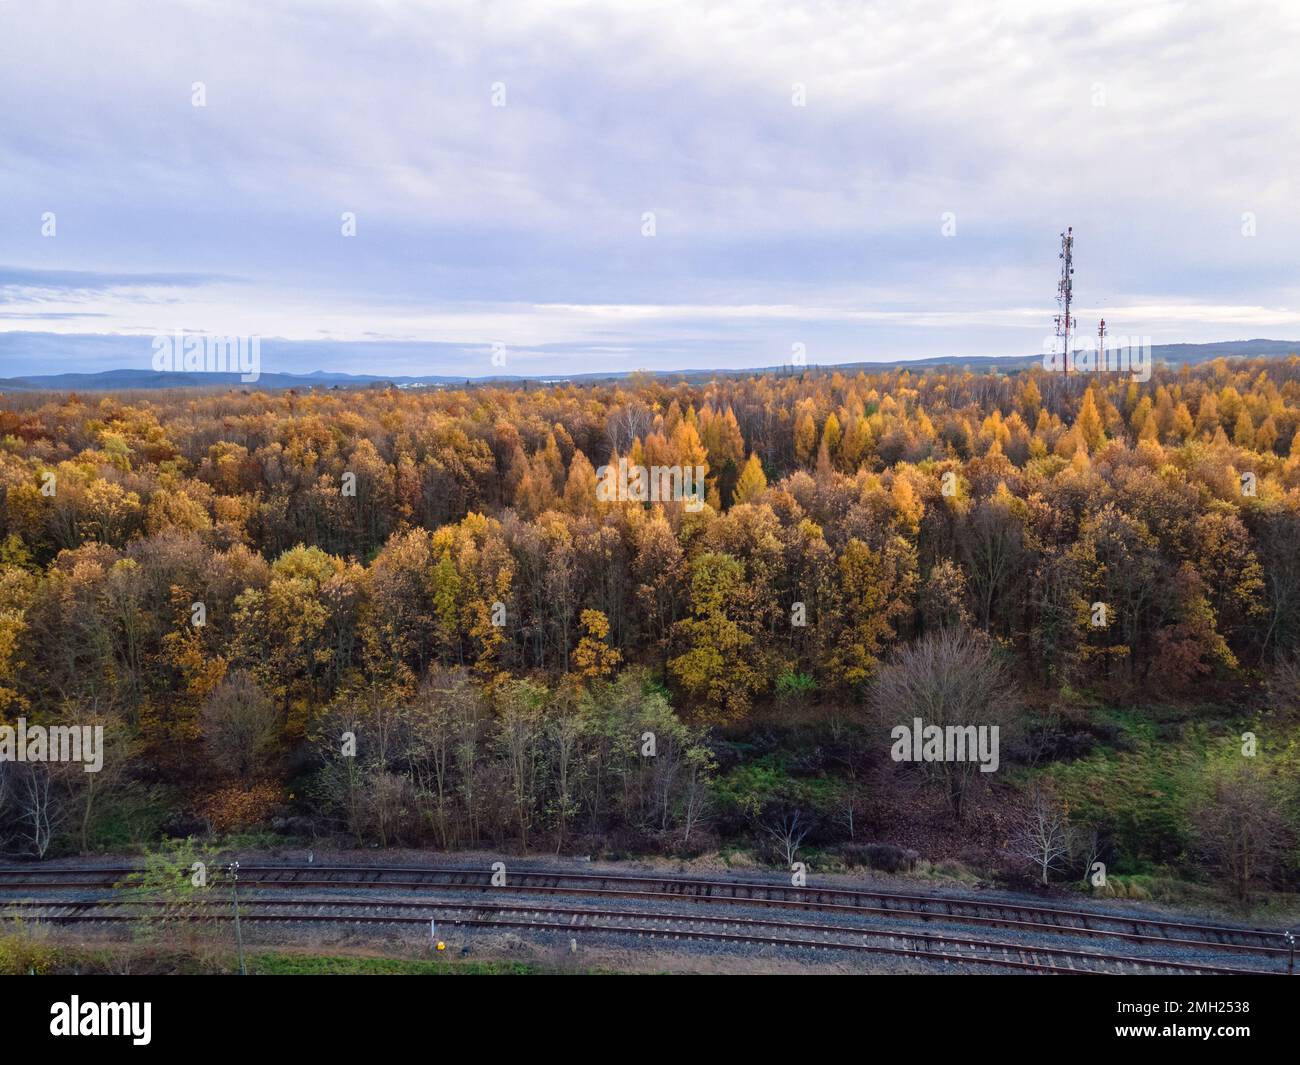 Ripresa aerea di un'area boscosa nei colori autunnali, binari ferroviari in fondo alla foto, Balassagyarmat, Ungheria Foto Stock